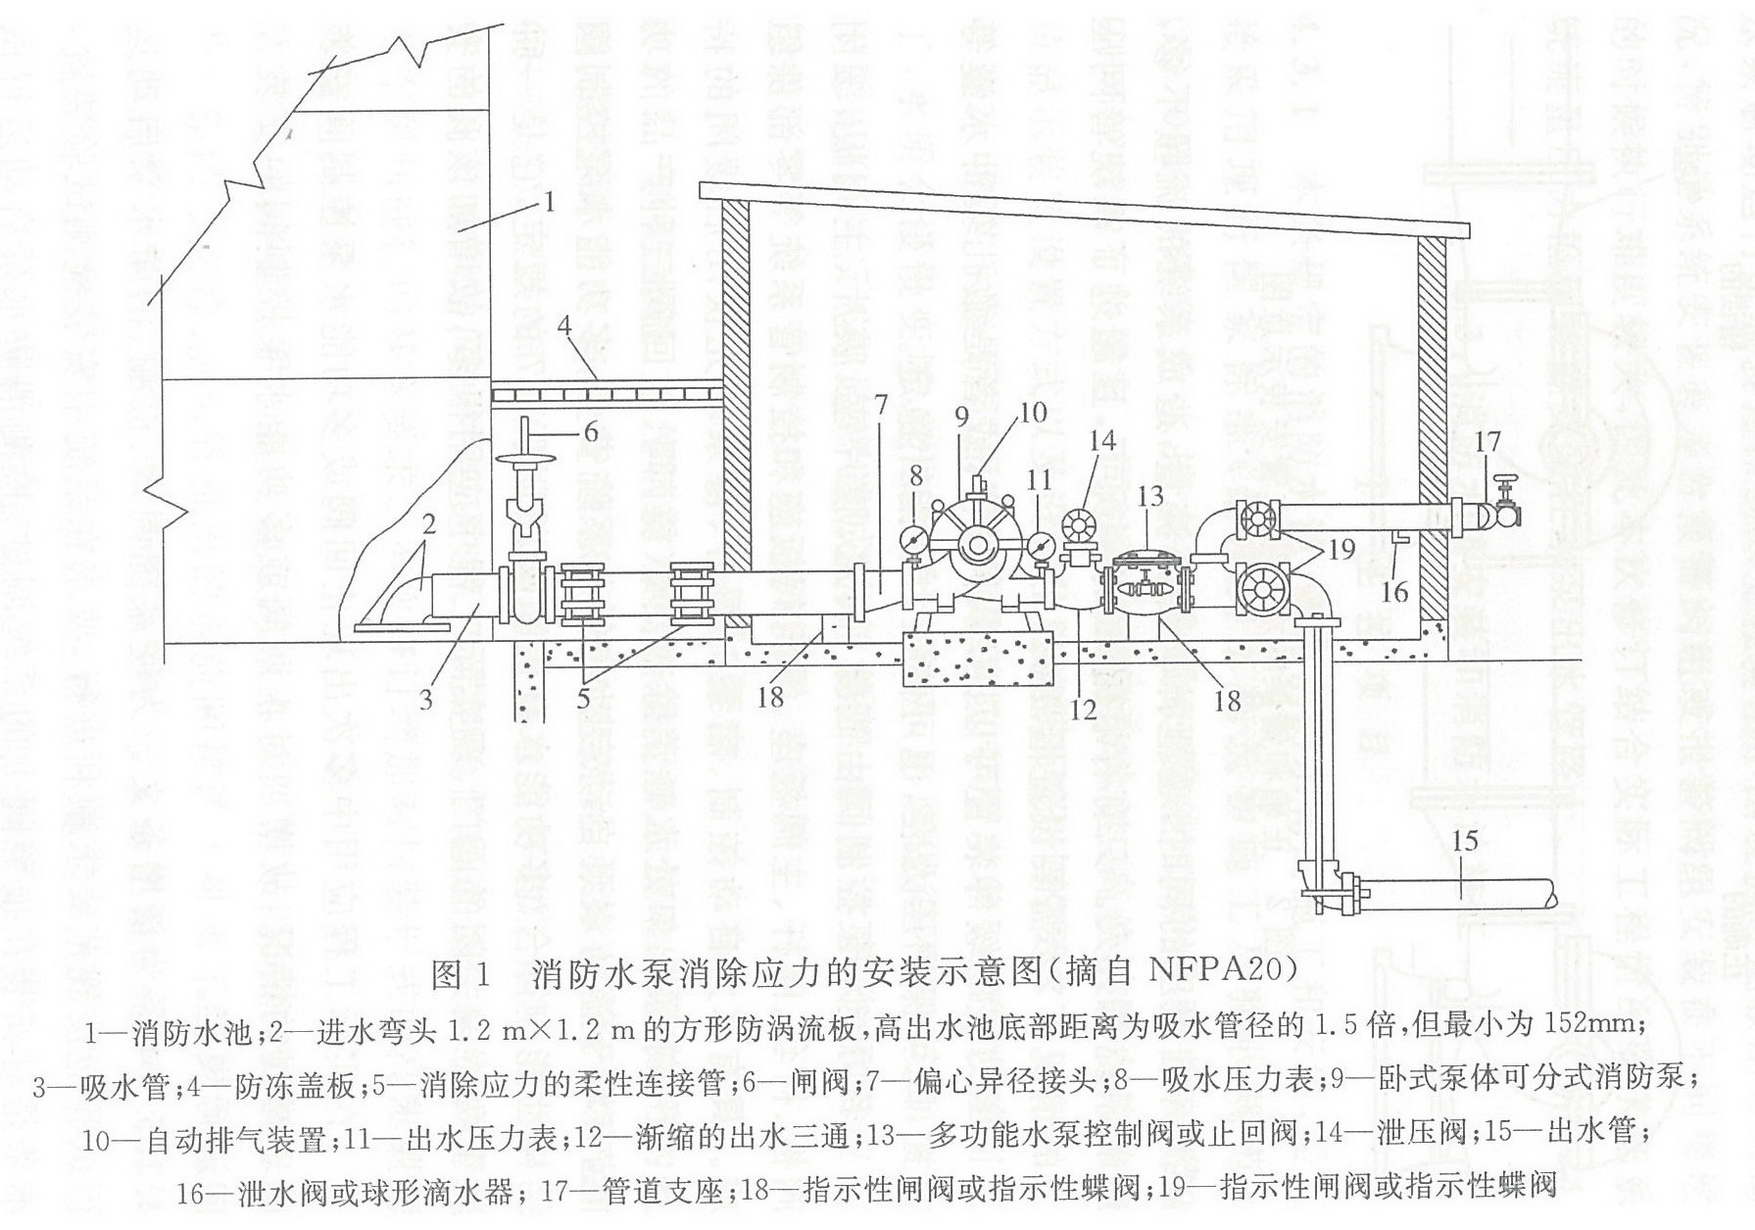 图1 消防水泵消除应力的安装示意图（摘自NFPA20）